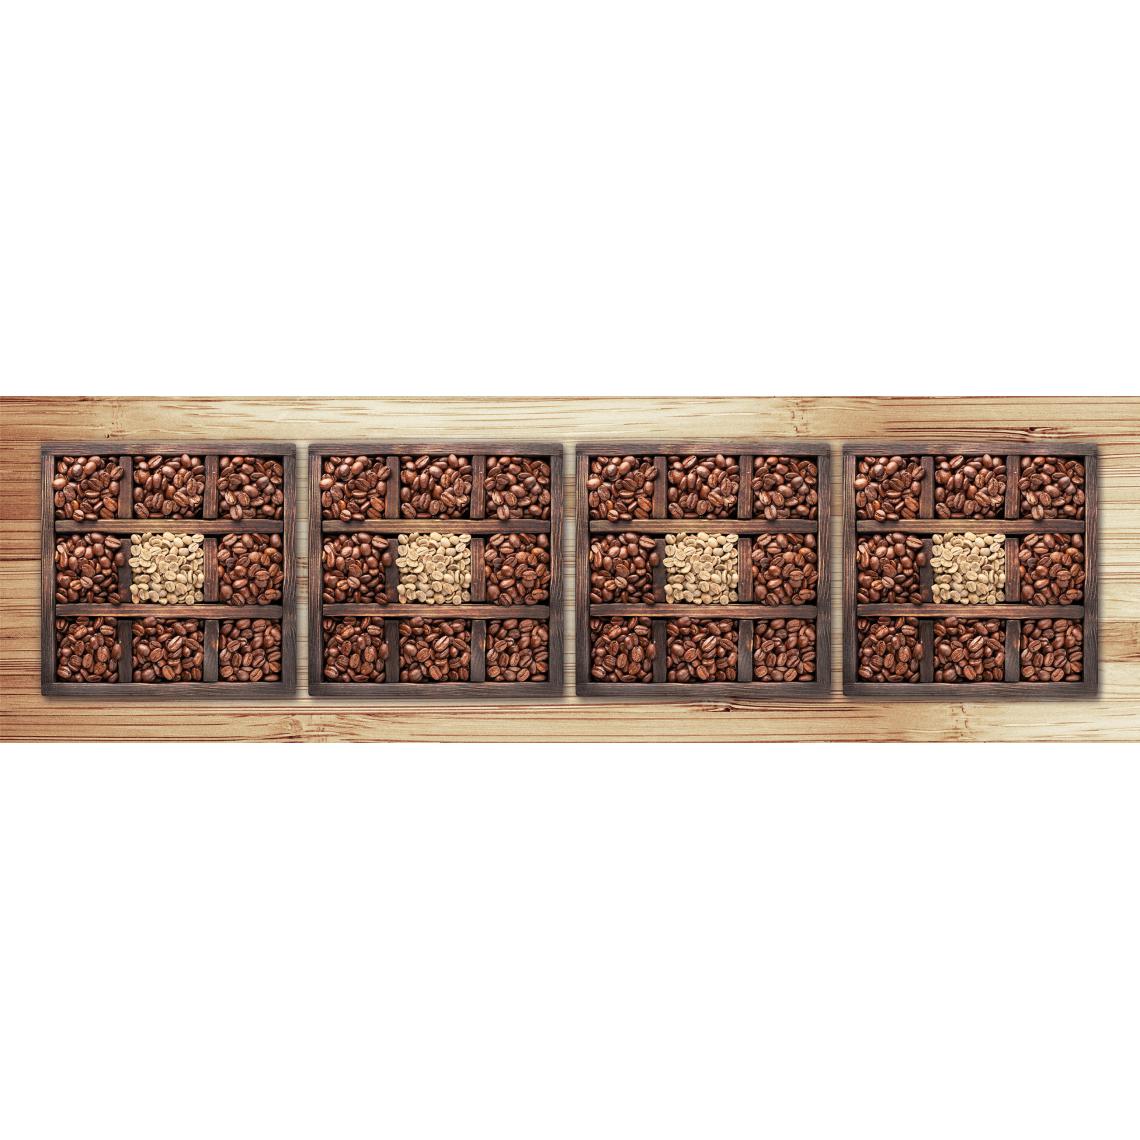 Alter - Chemin de cuisine, 100% Made in Italy, Tapis antitache avec impression numérique, Tapis antidérapant et lavable, Modèle Gregory, 220x52 cm - Tapis